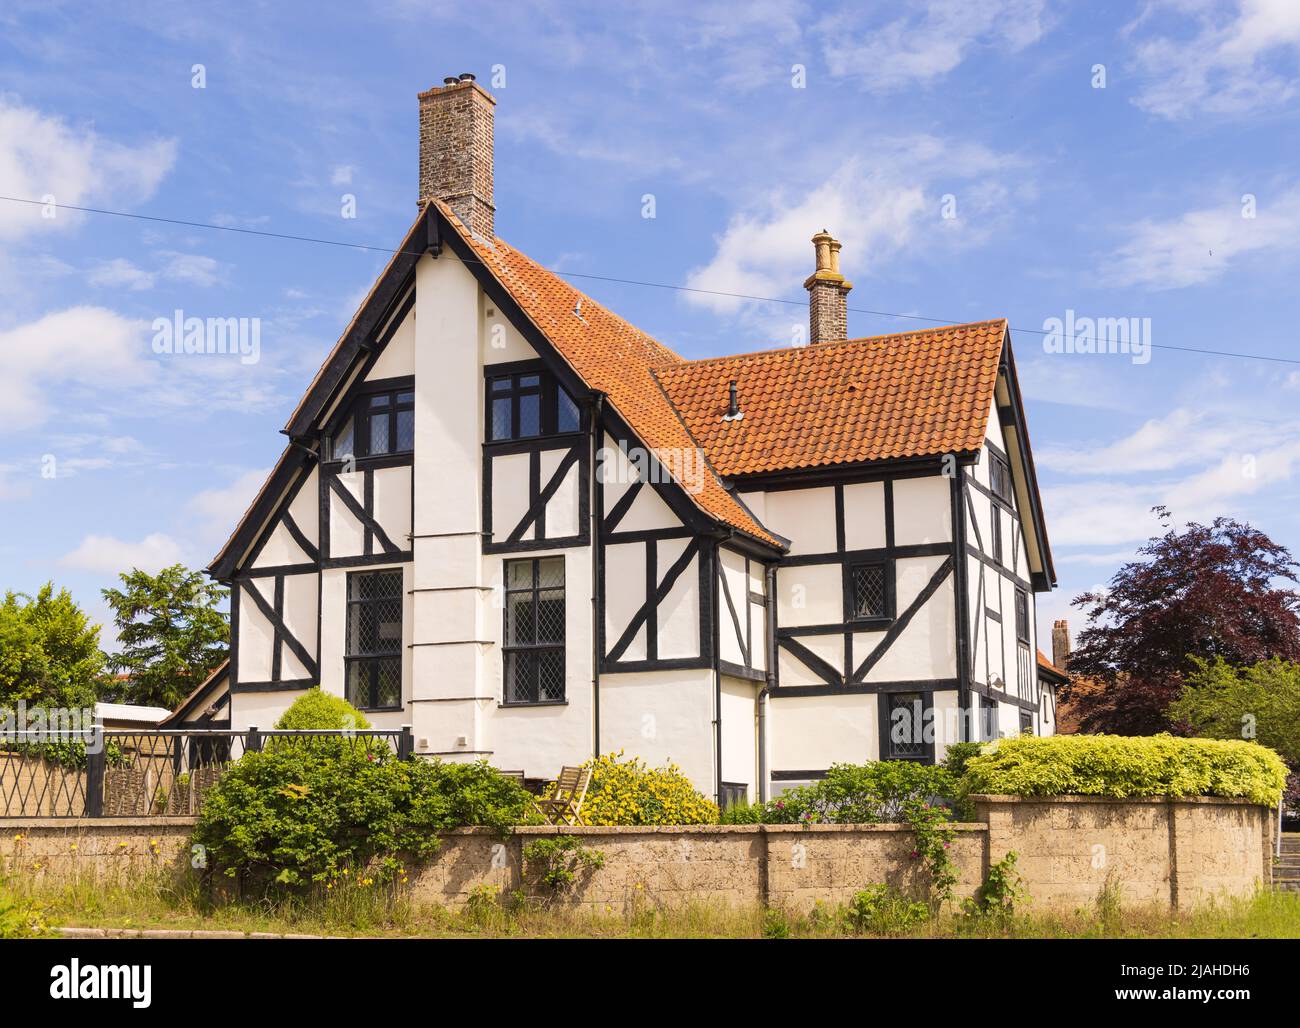 Belles maisons de caractère dans le village de Thorpeness, Suffolk. ROYAUME-UNI Banque D'Images